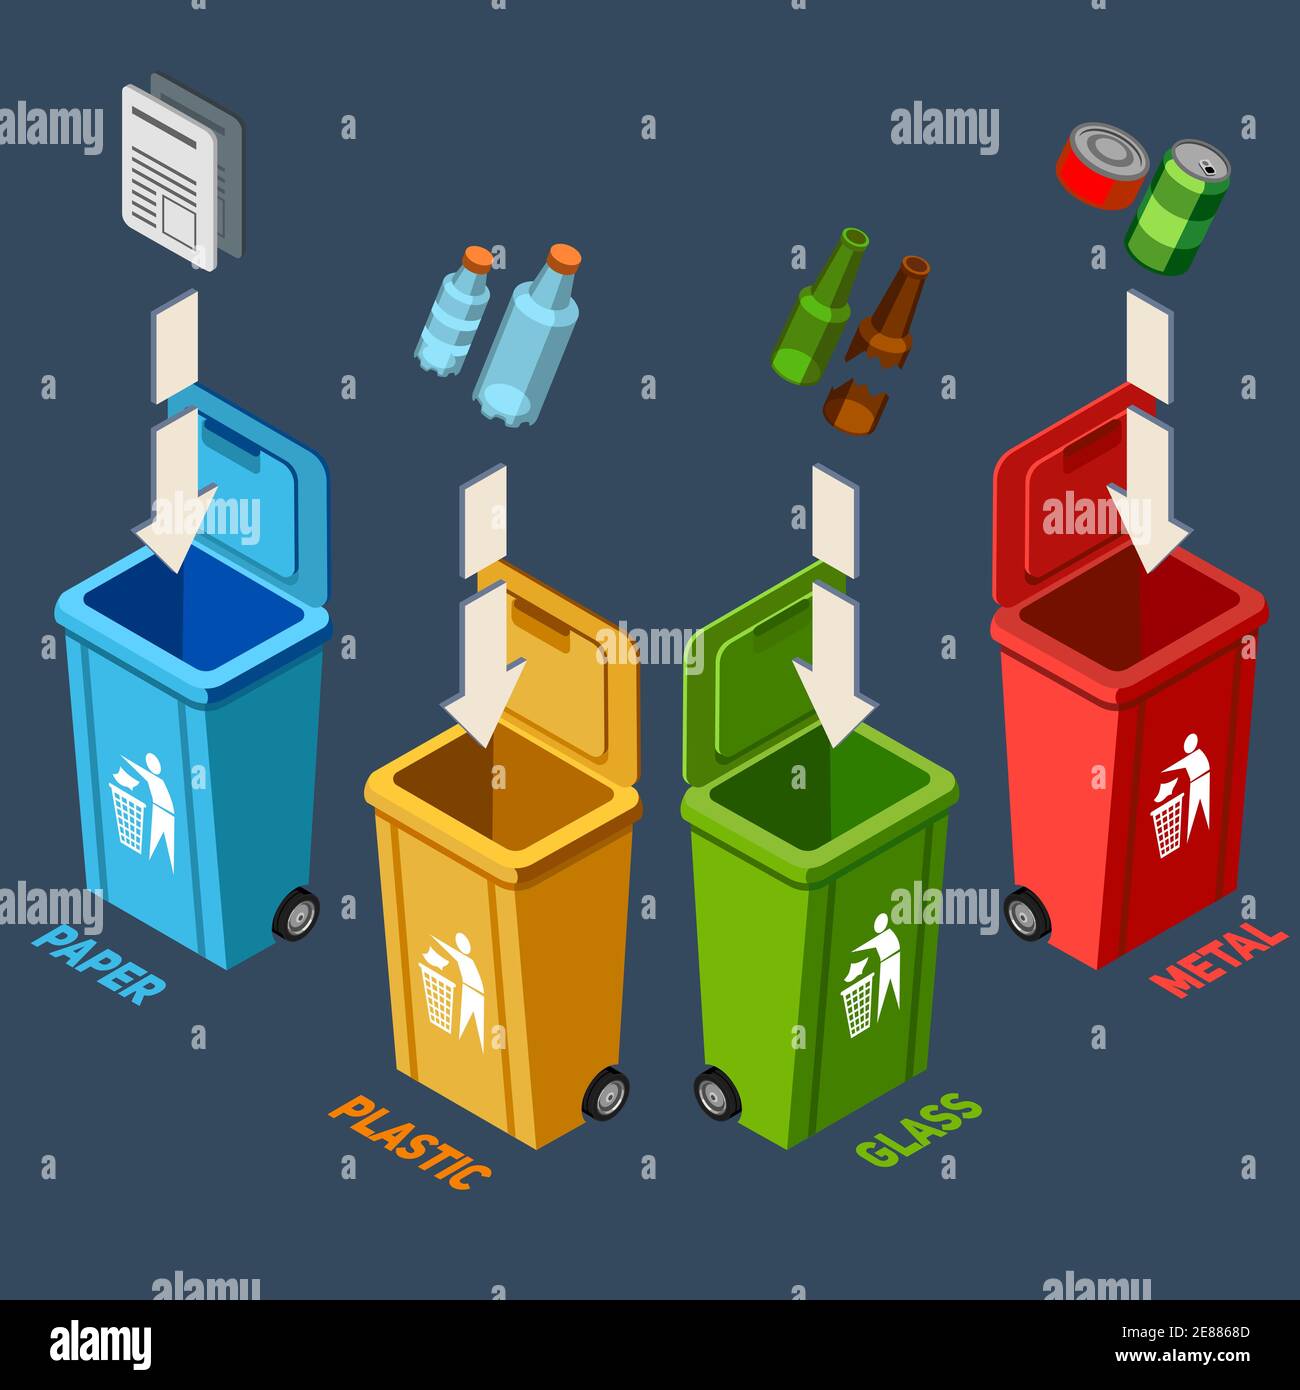 Conjunto de ilustraciones vectoriales de dibujos animados de diferentes  contenedores de basura. cubos de basura para basura metálica, electrónica,  plástica, de vidrio, orgánica y de papel. separación y reciclaje de  residuos, concepto